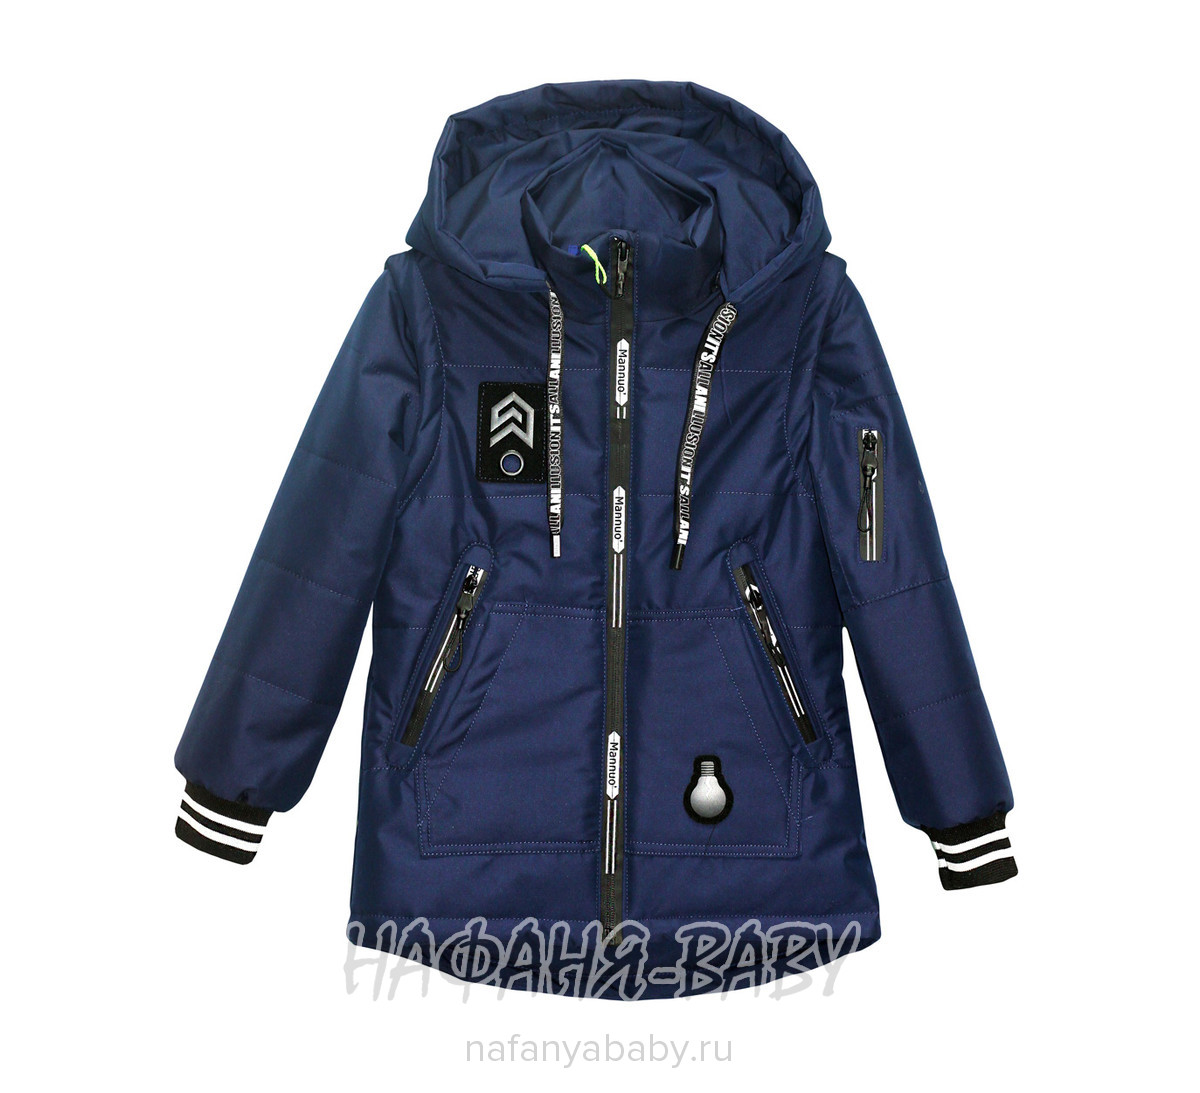 Детская куртка - трансформер XRTR арт: 622, 5-9 лет, цвет темно-синий, оптом Китай (Пекин)